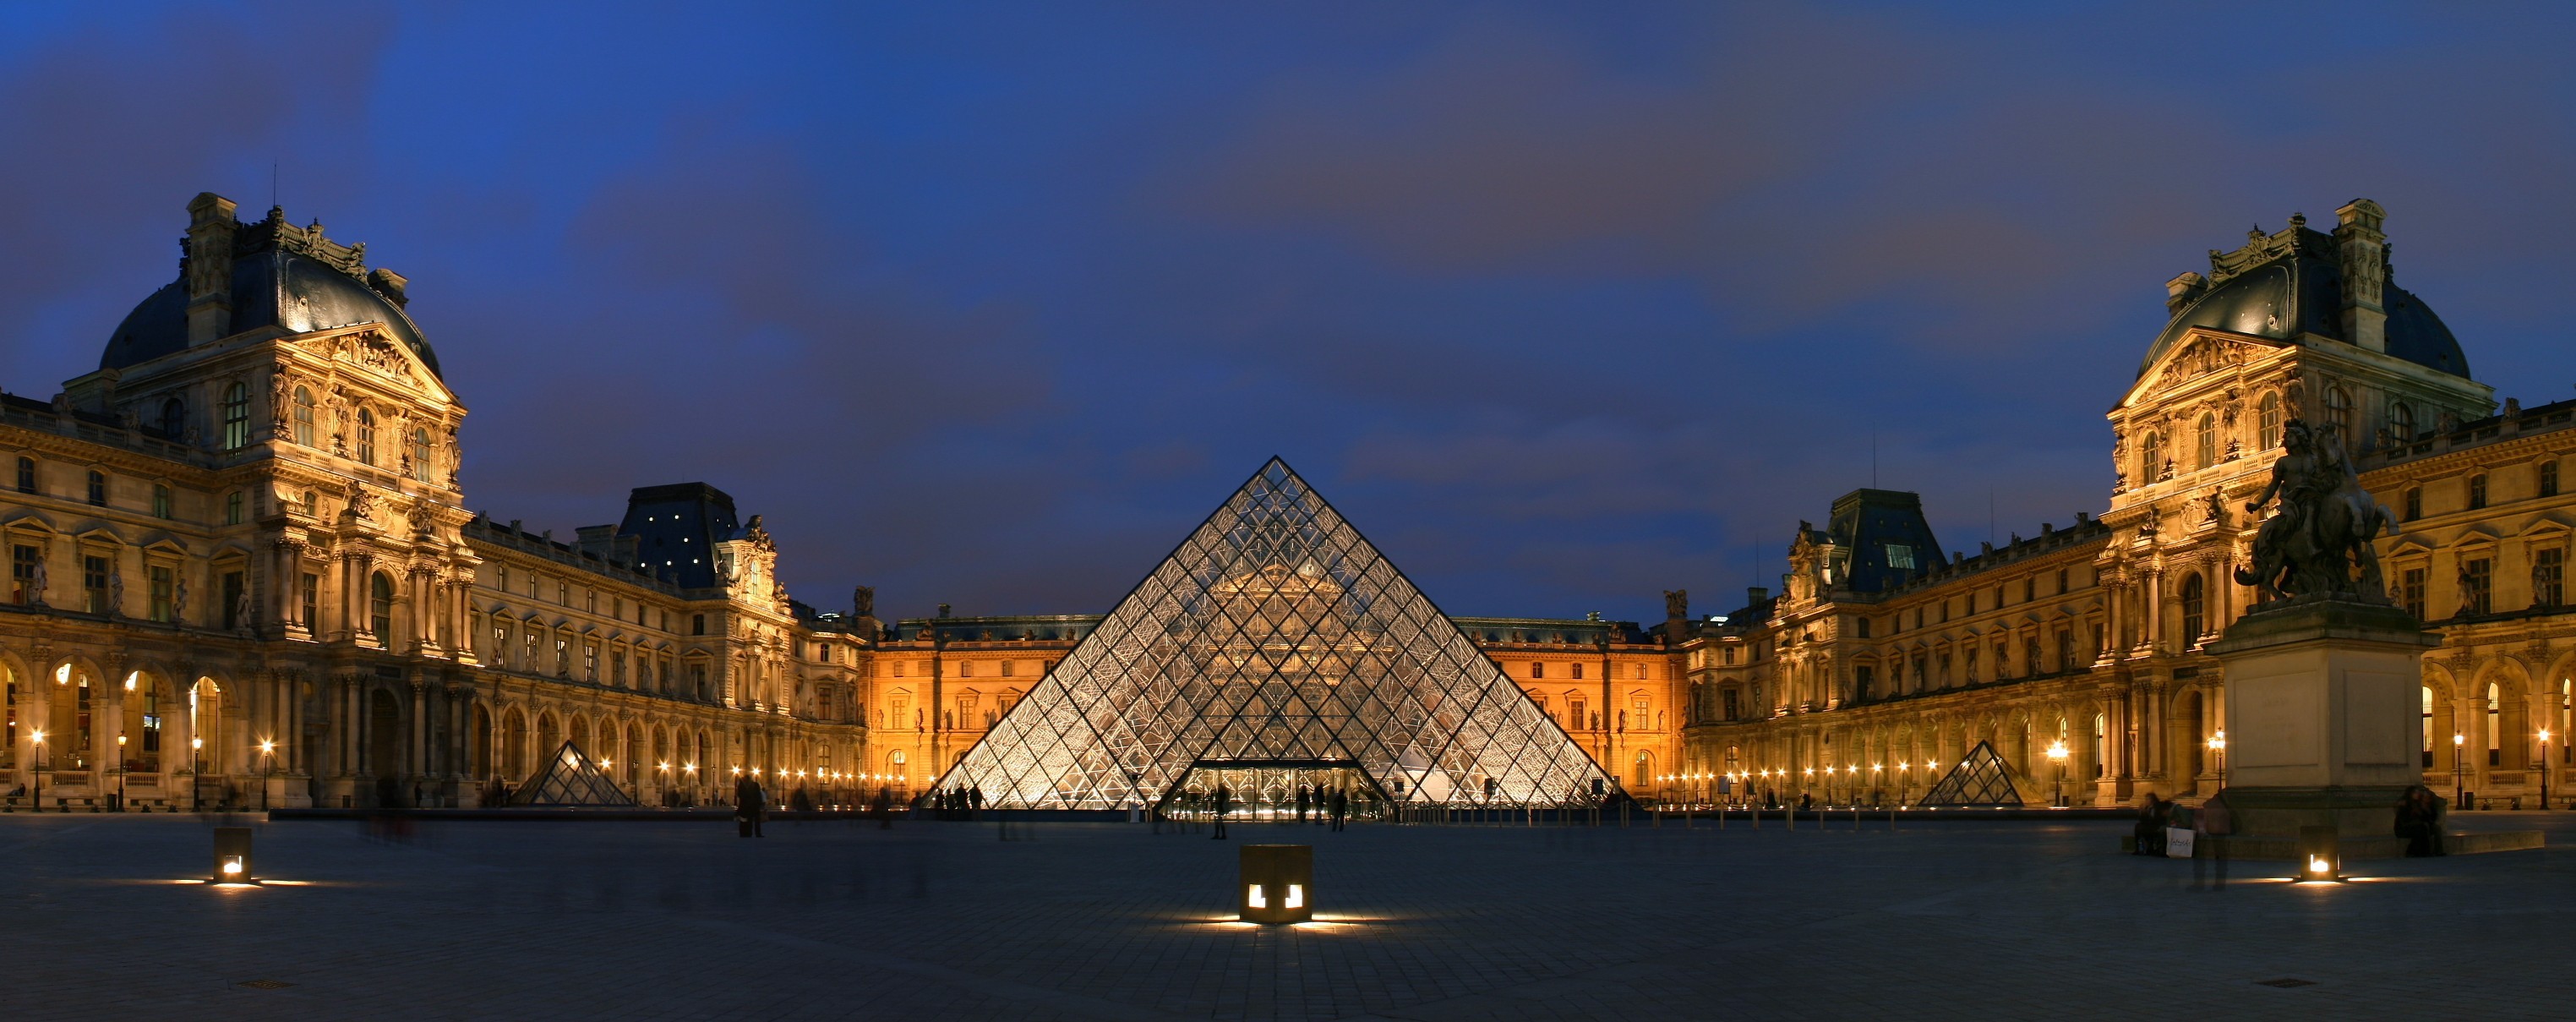 Лувр в Париже · бесплатное фото